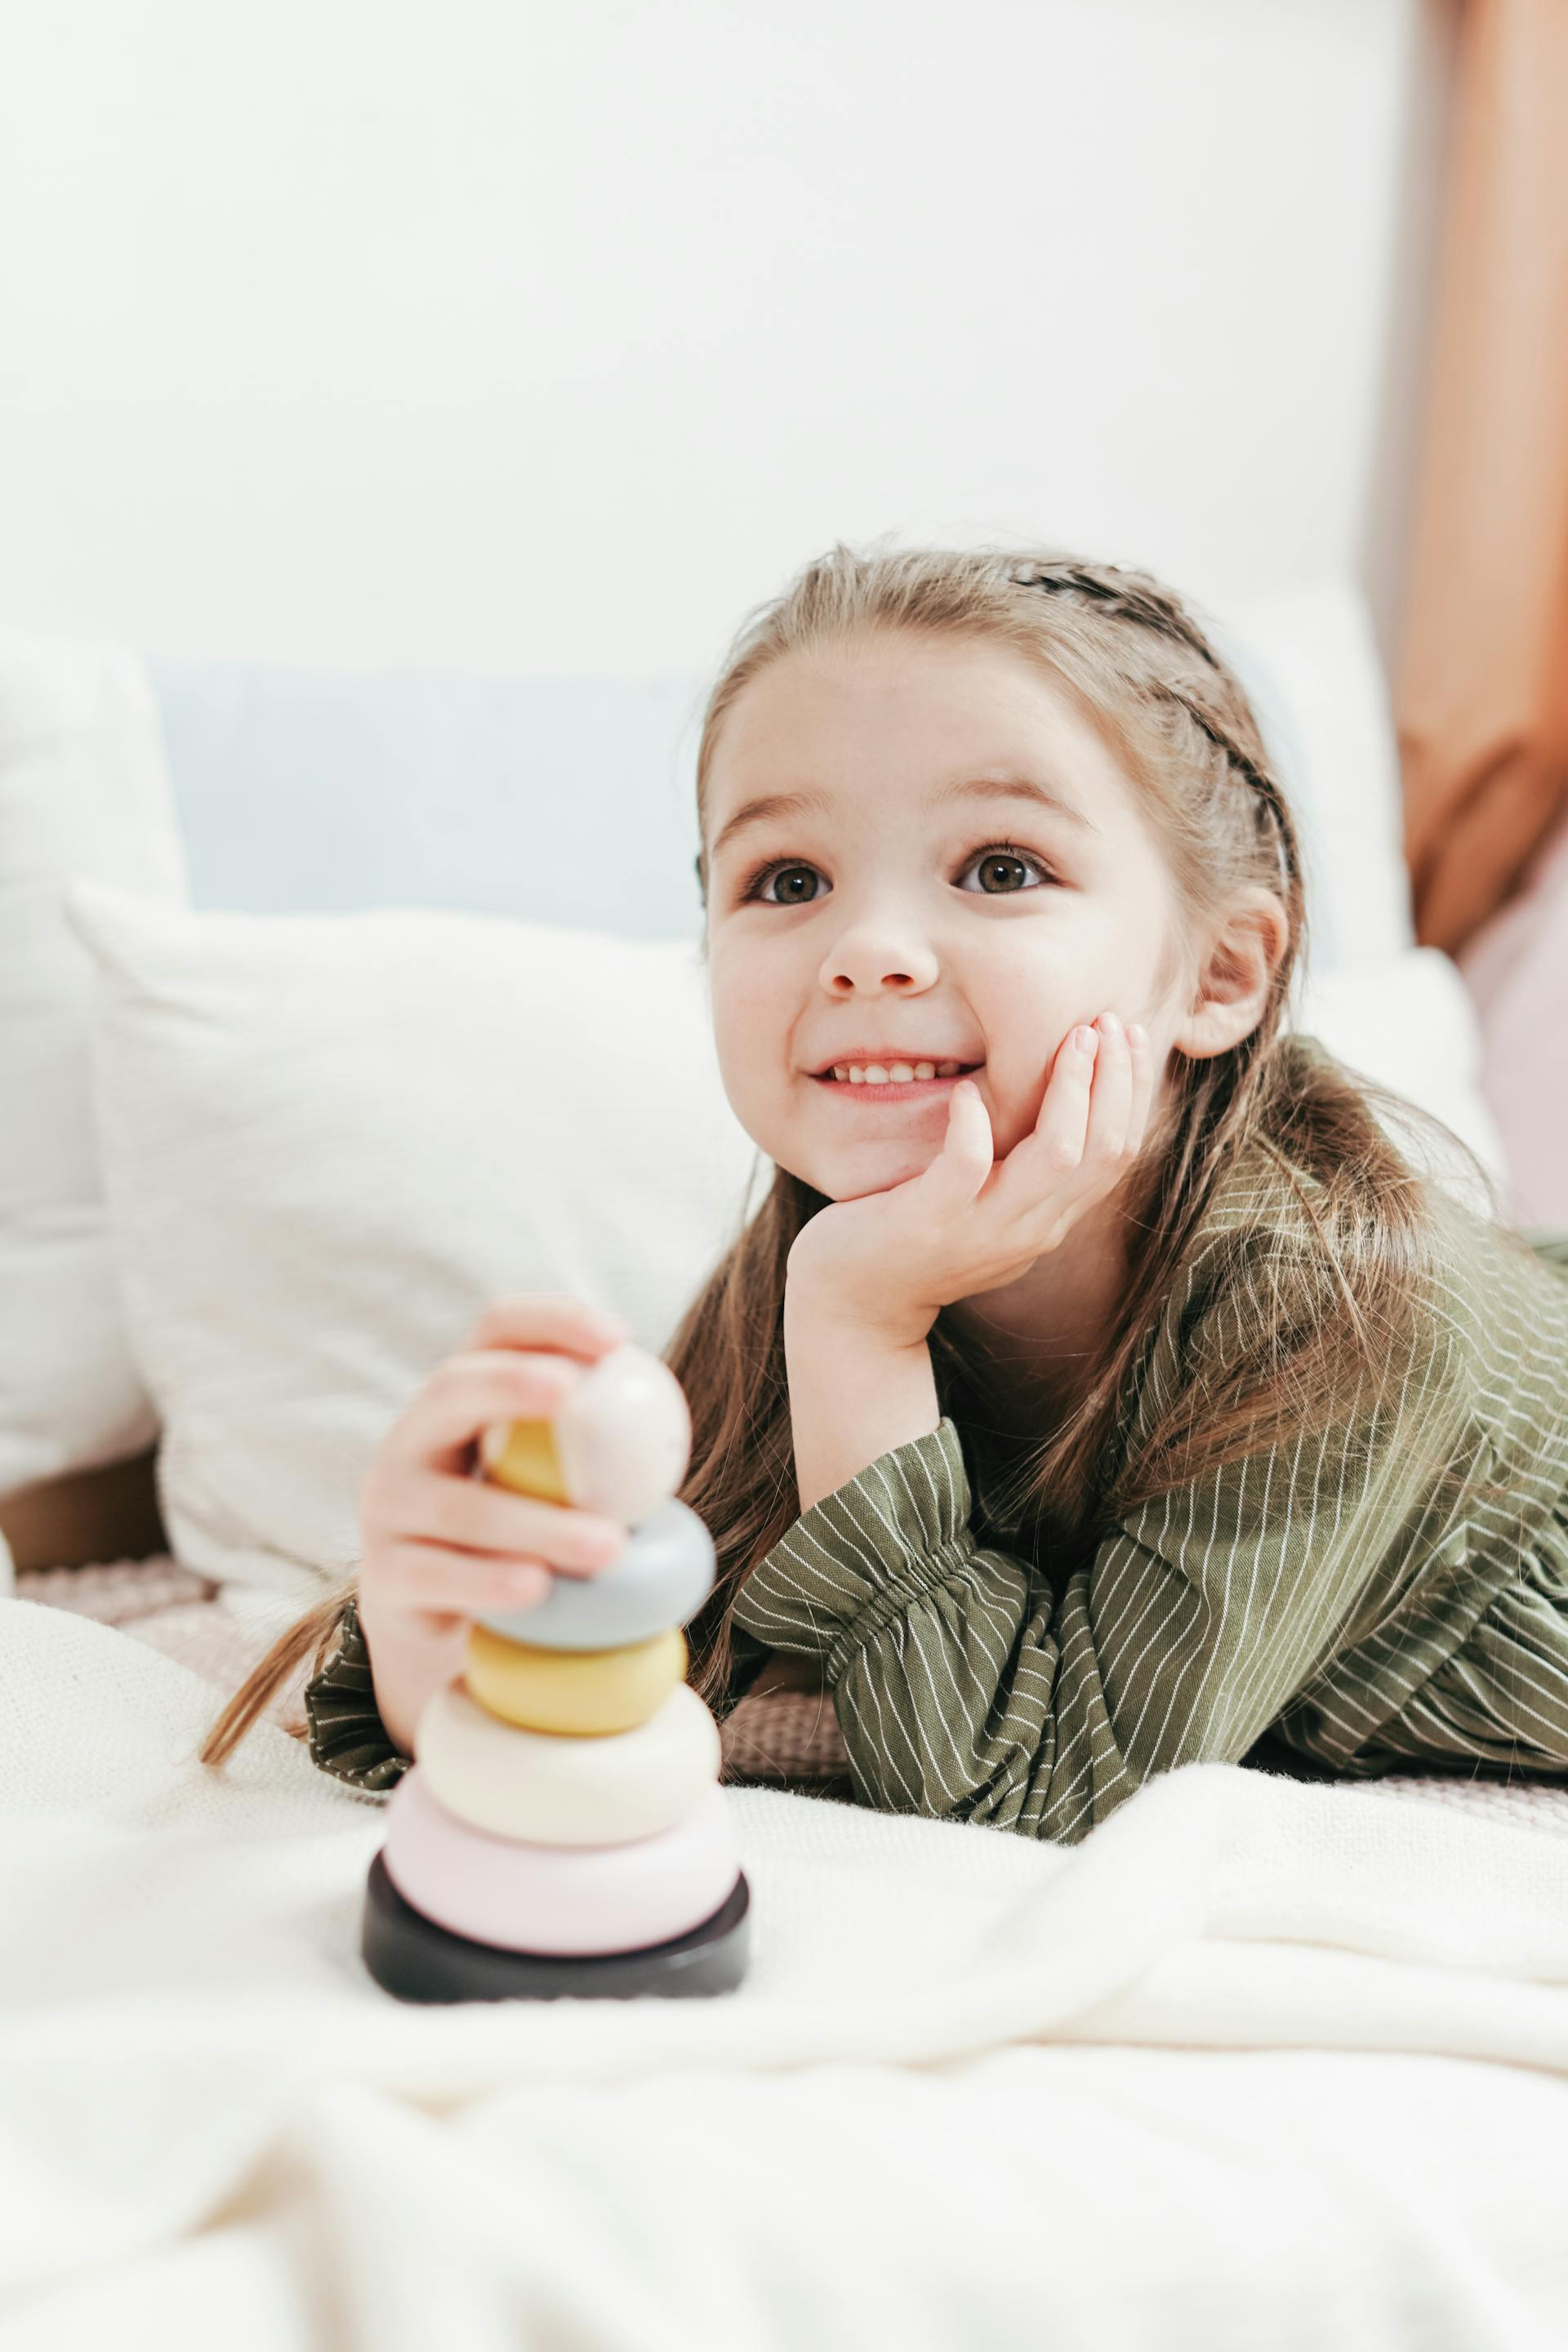 Ein lächelndes kleines Mädchen mit einem Spielzeug | Quelle: Pexels